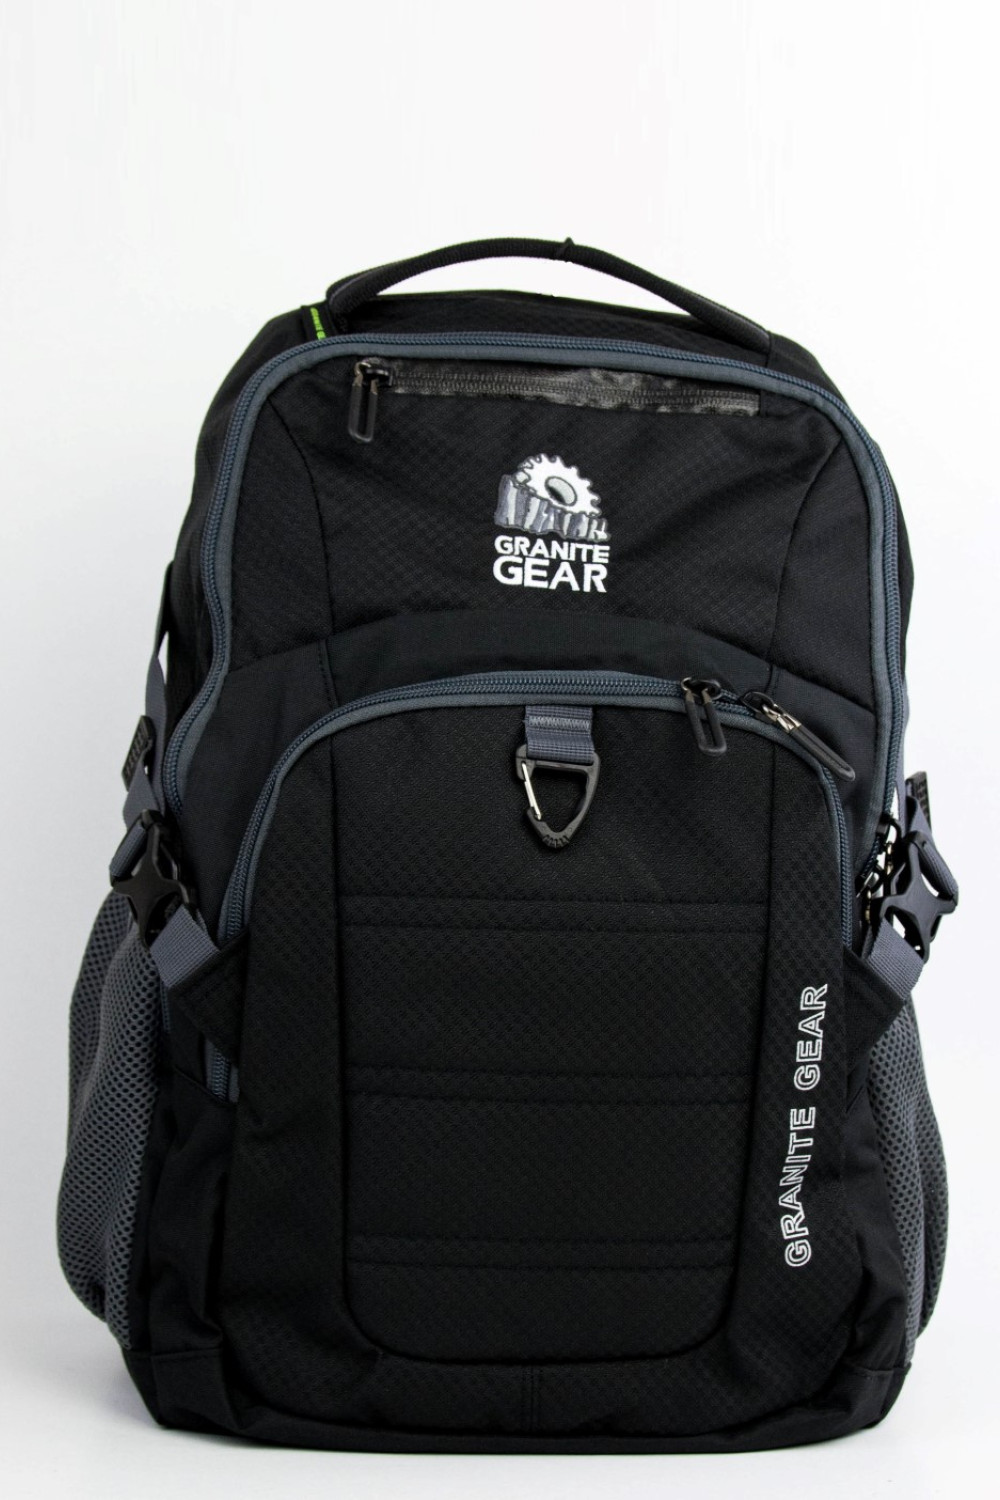 Airflow System Granite Gear G7992 Men's Black Motorcycle Backpack